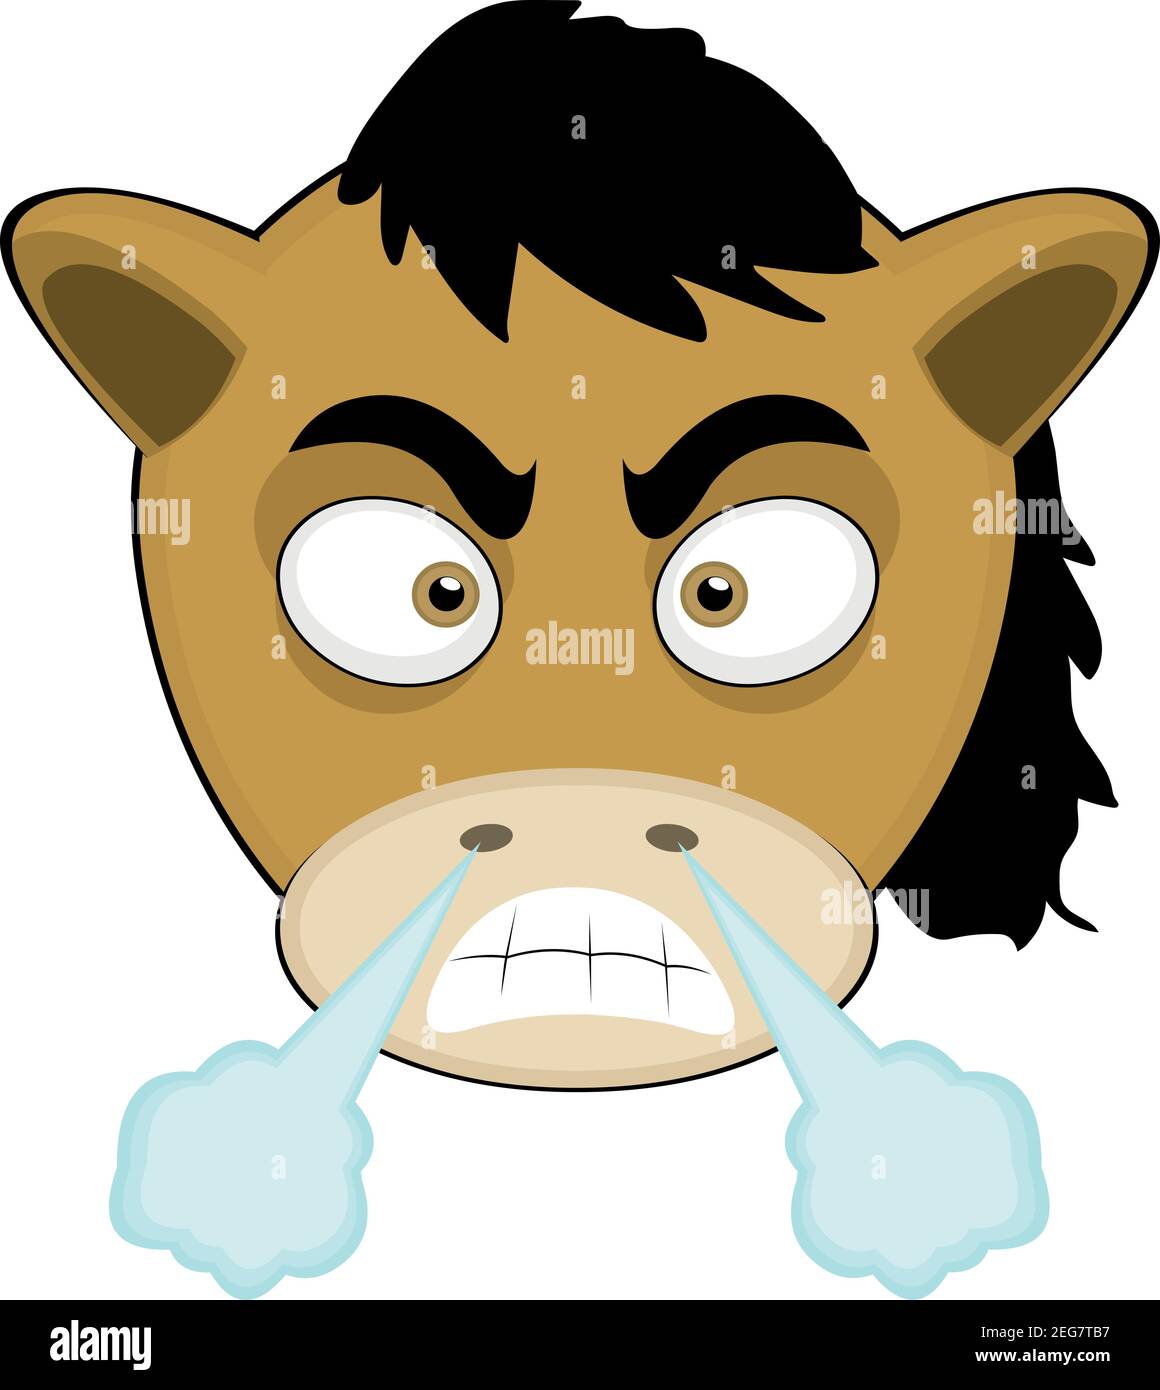 Vecteur émoticône illustration dessin animé de la tête d'un poney avec expression en colère provenant de la fumée du nez Illustration de Vecteur